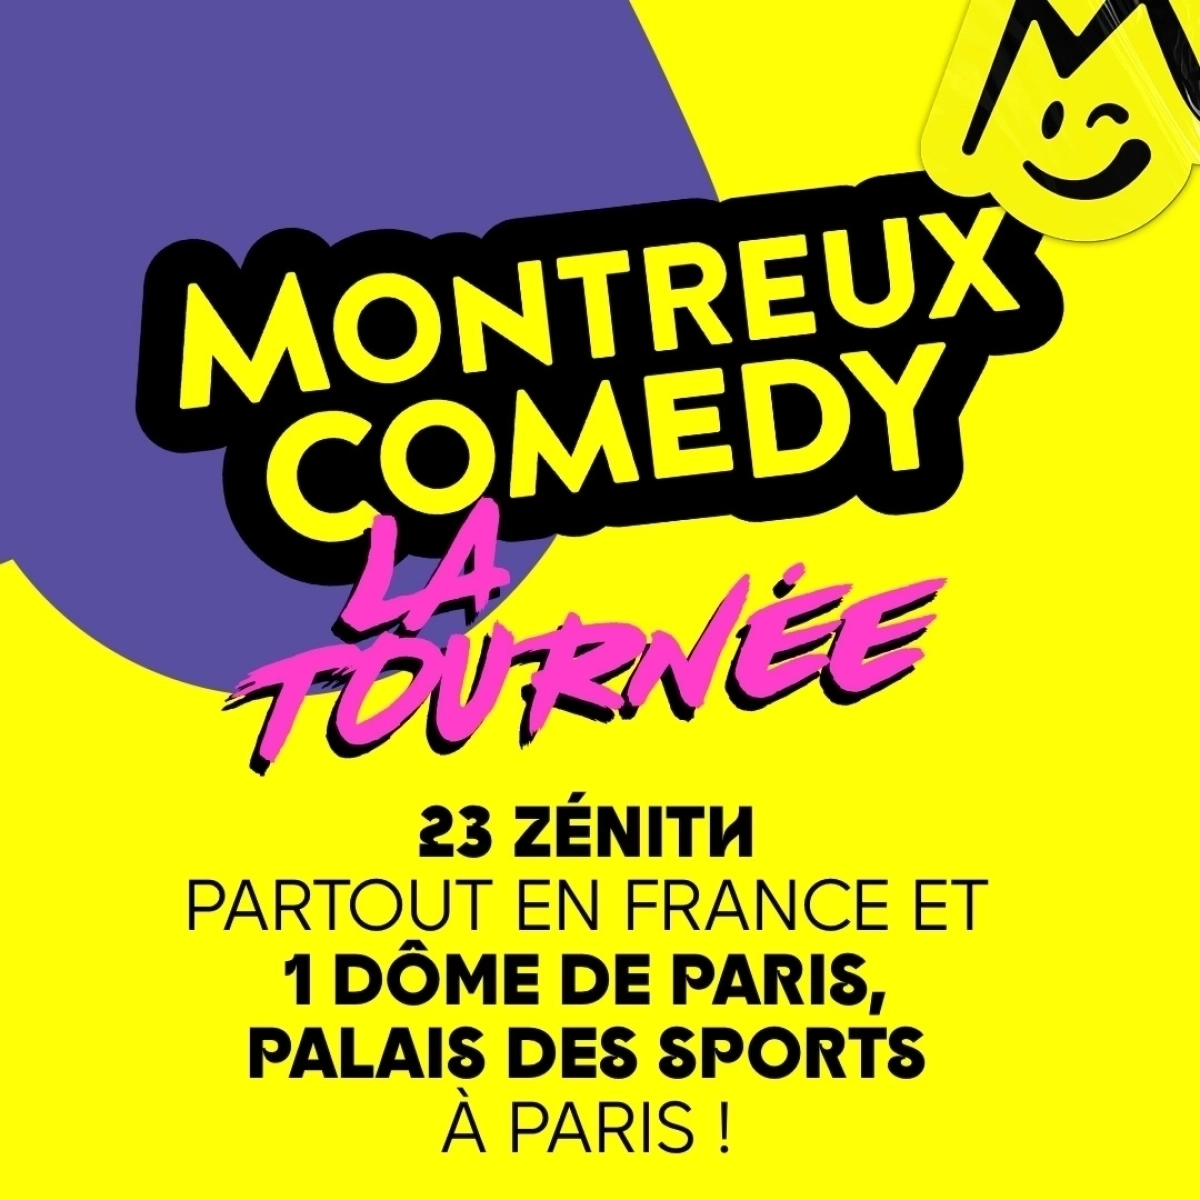 Montreux Comedy - La Tournée at Le Dome Tickets